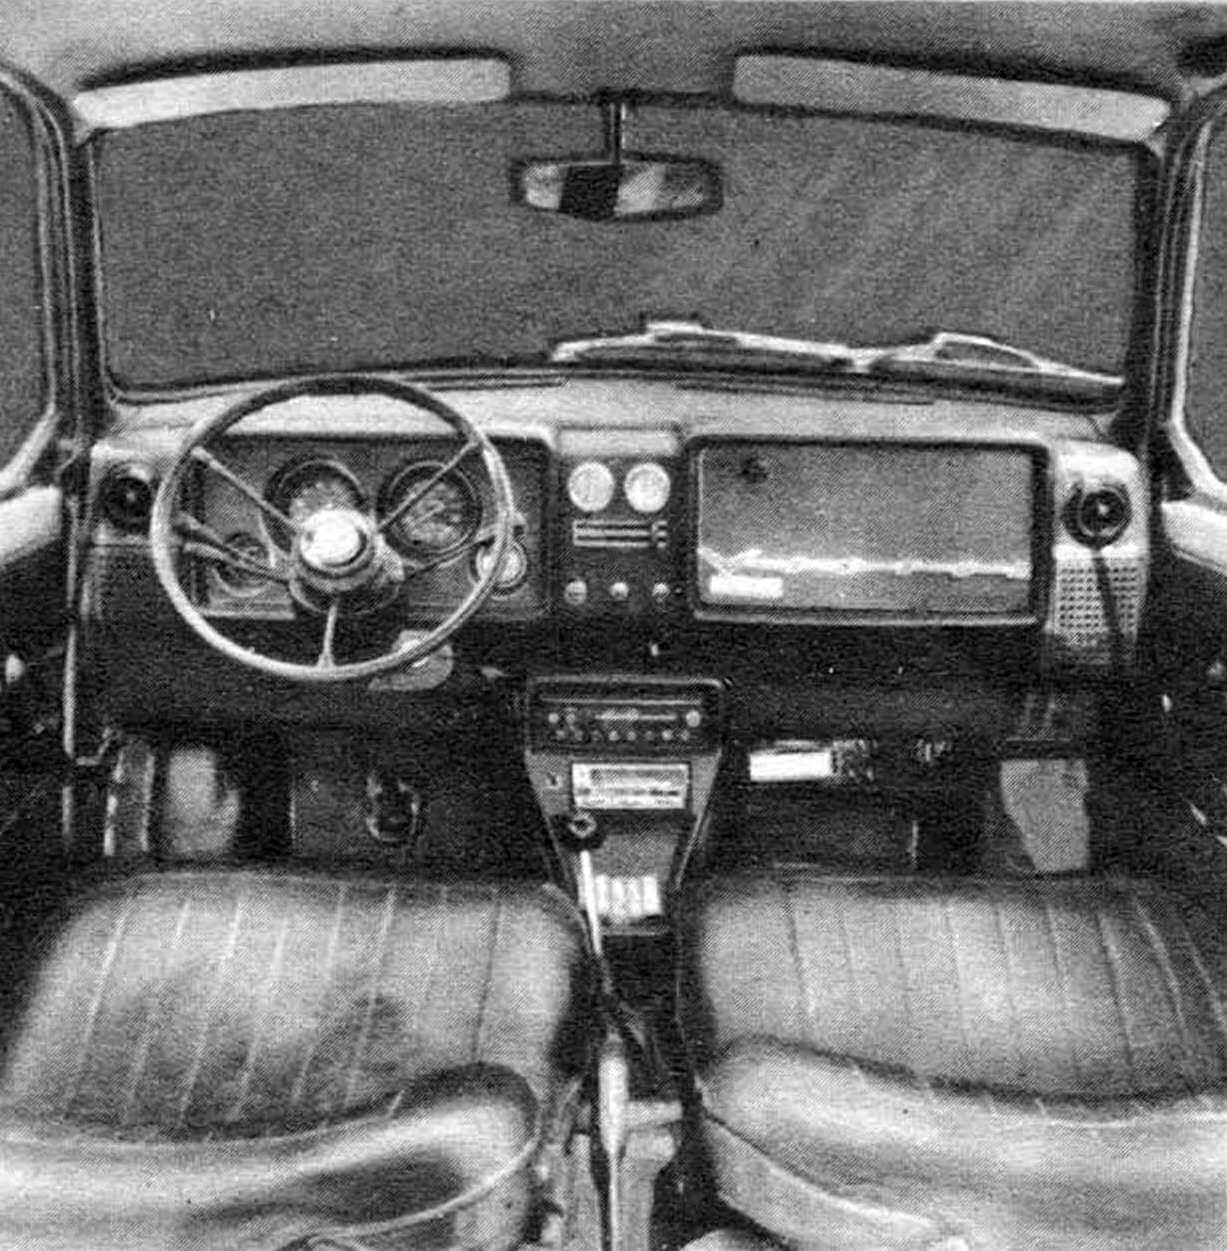 Spacious and roomy car interior